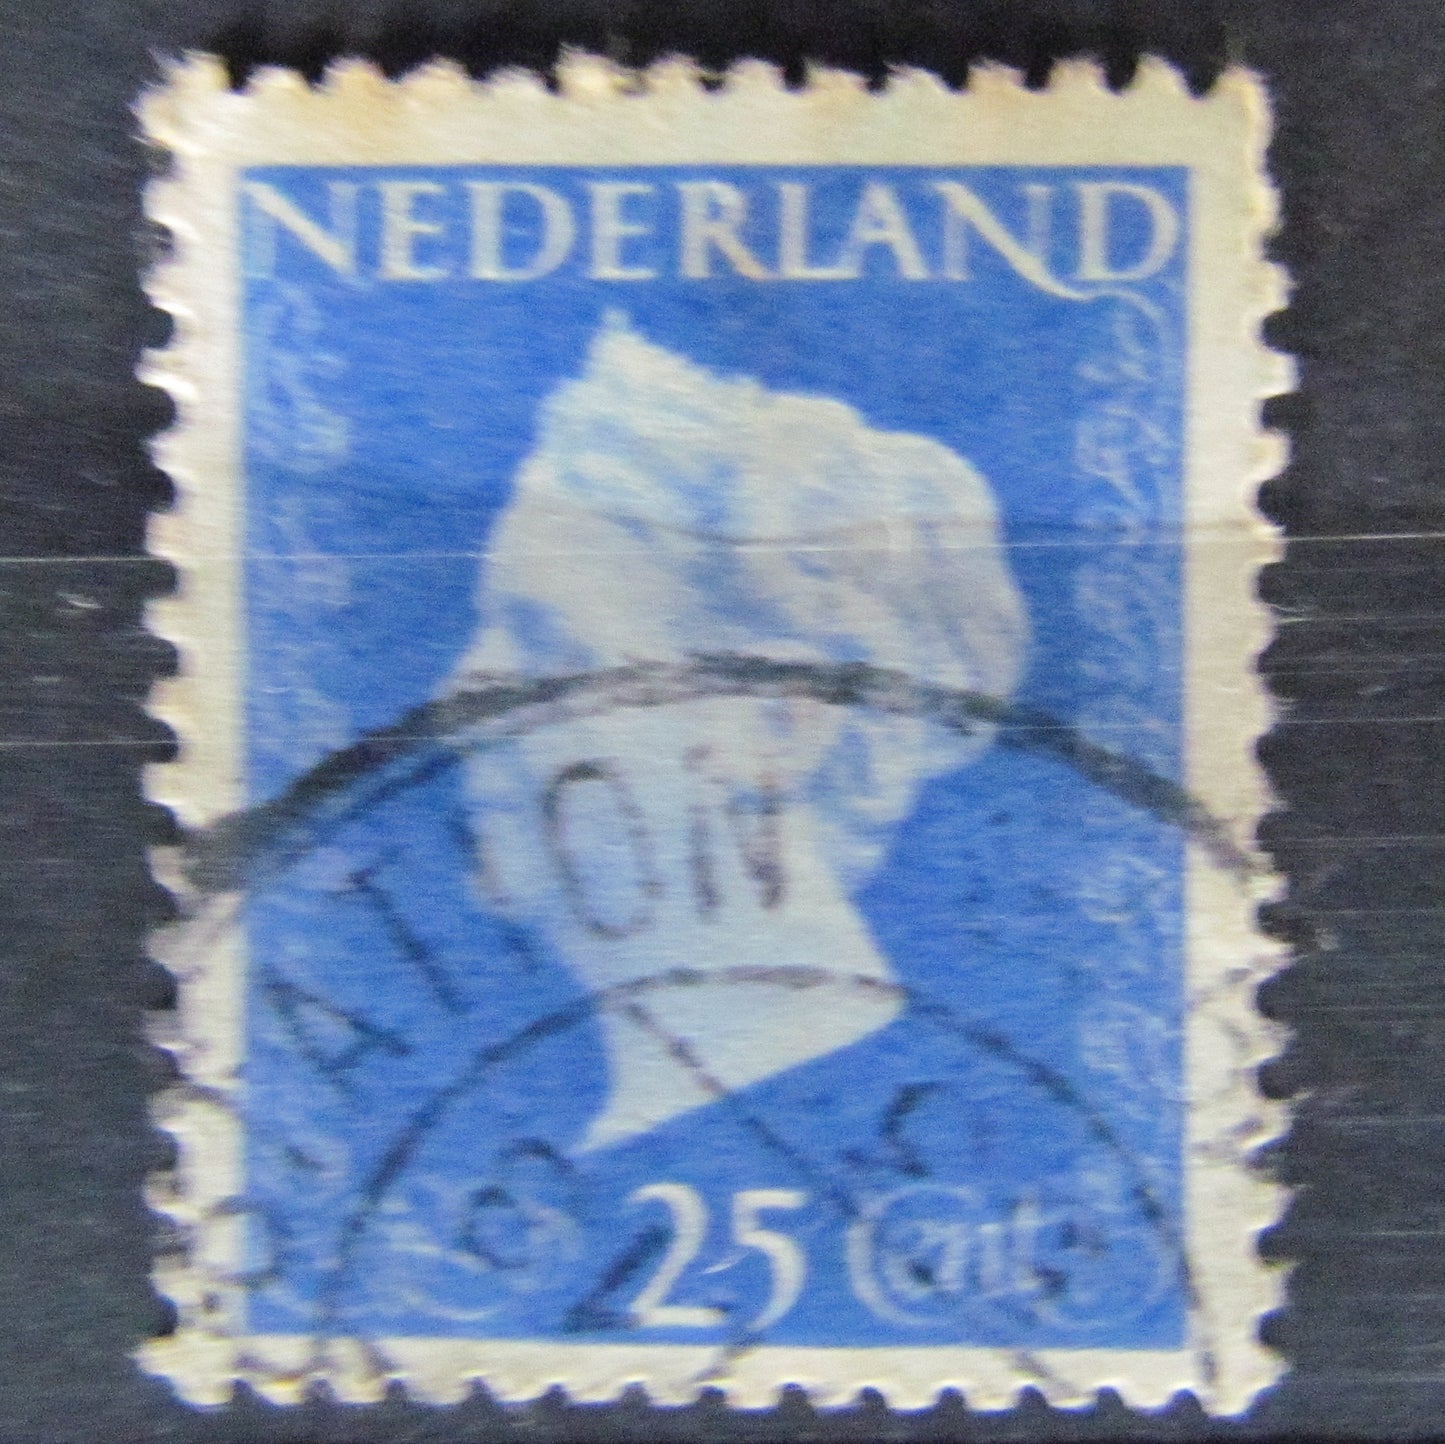 Dutch Netherlands 1946 25 Cent Queen Wilhelmina Blue Stamp Cancelled